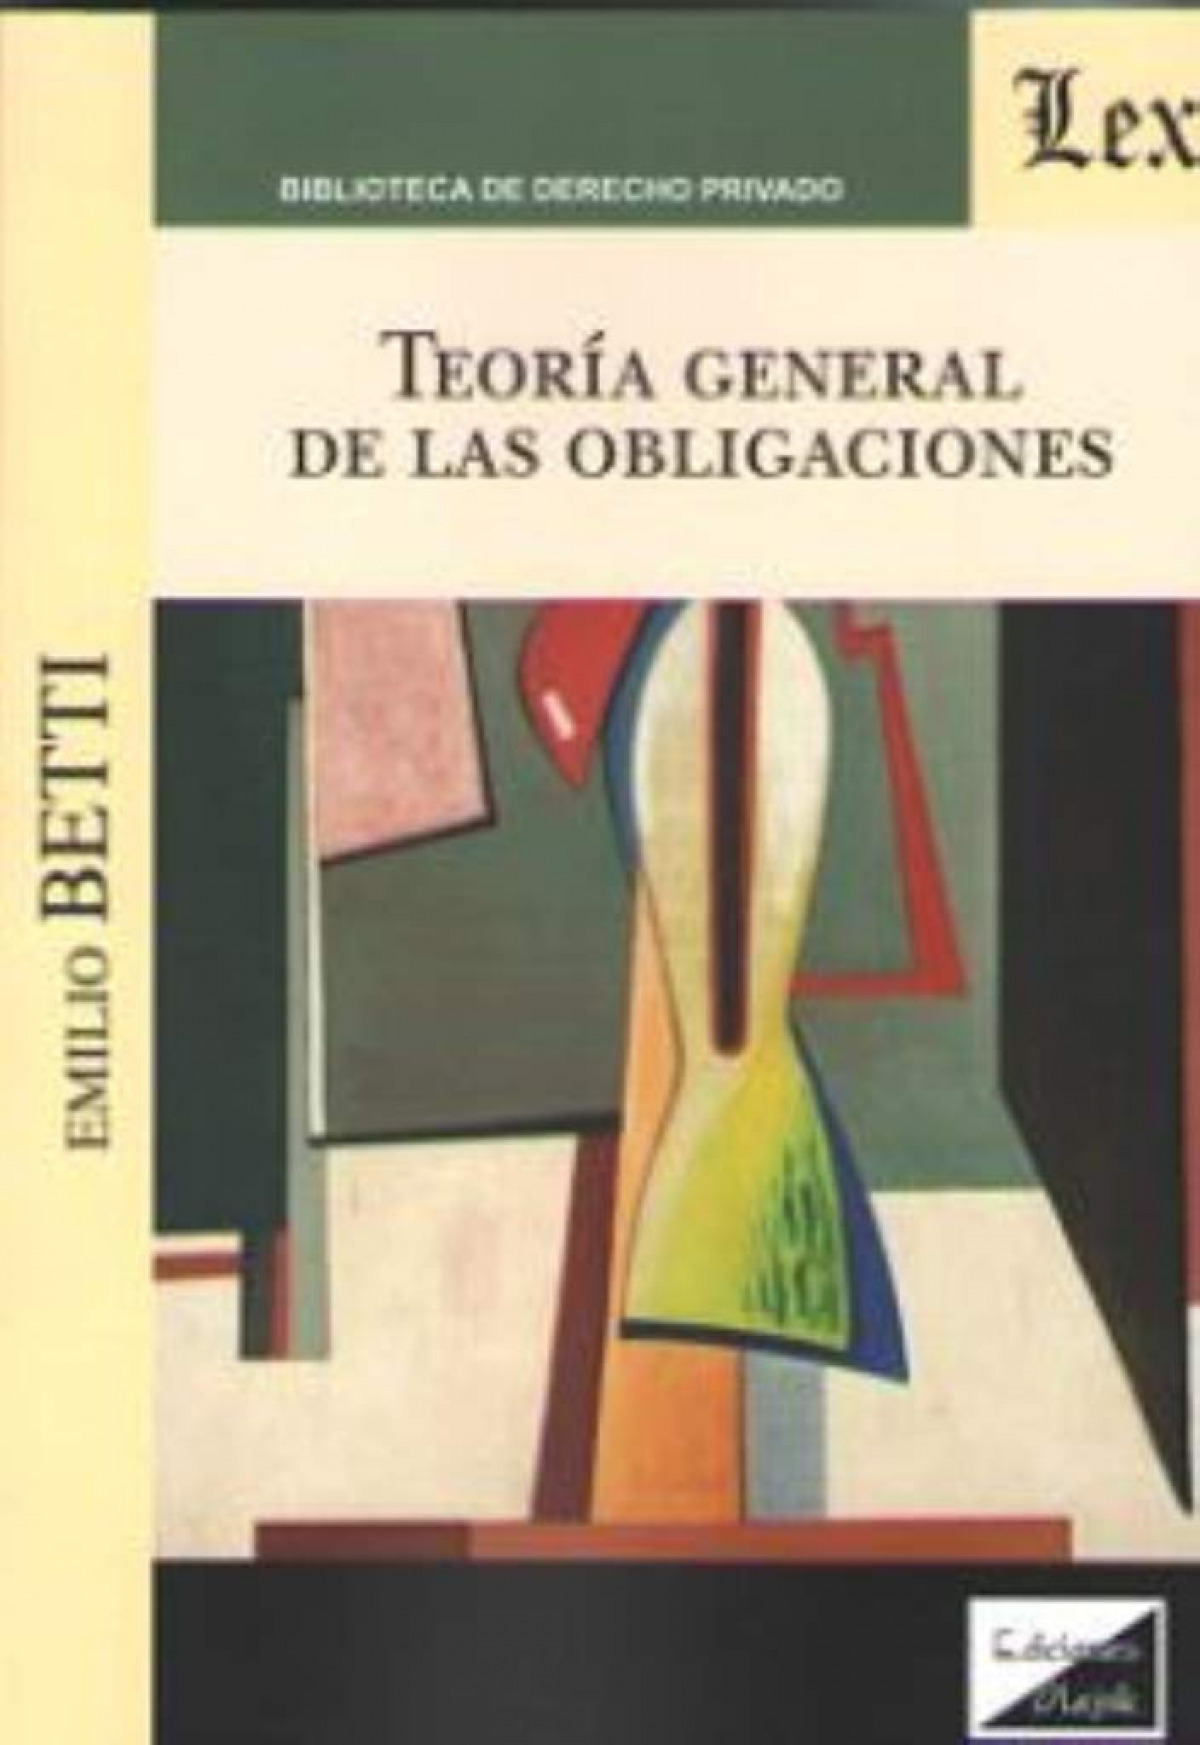 Teoria general de las obligaciones (betti) - Betti, Emilio